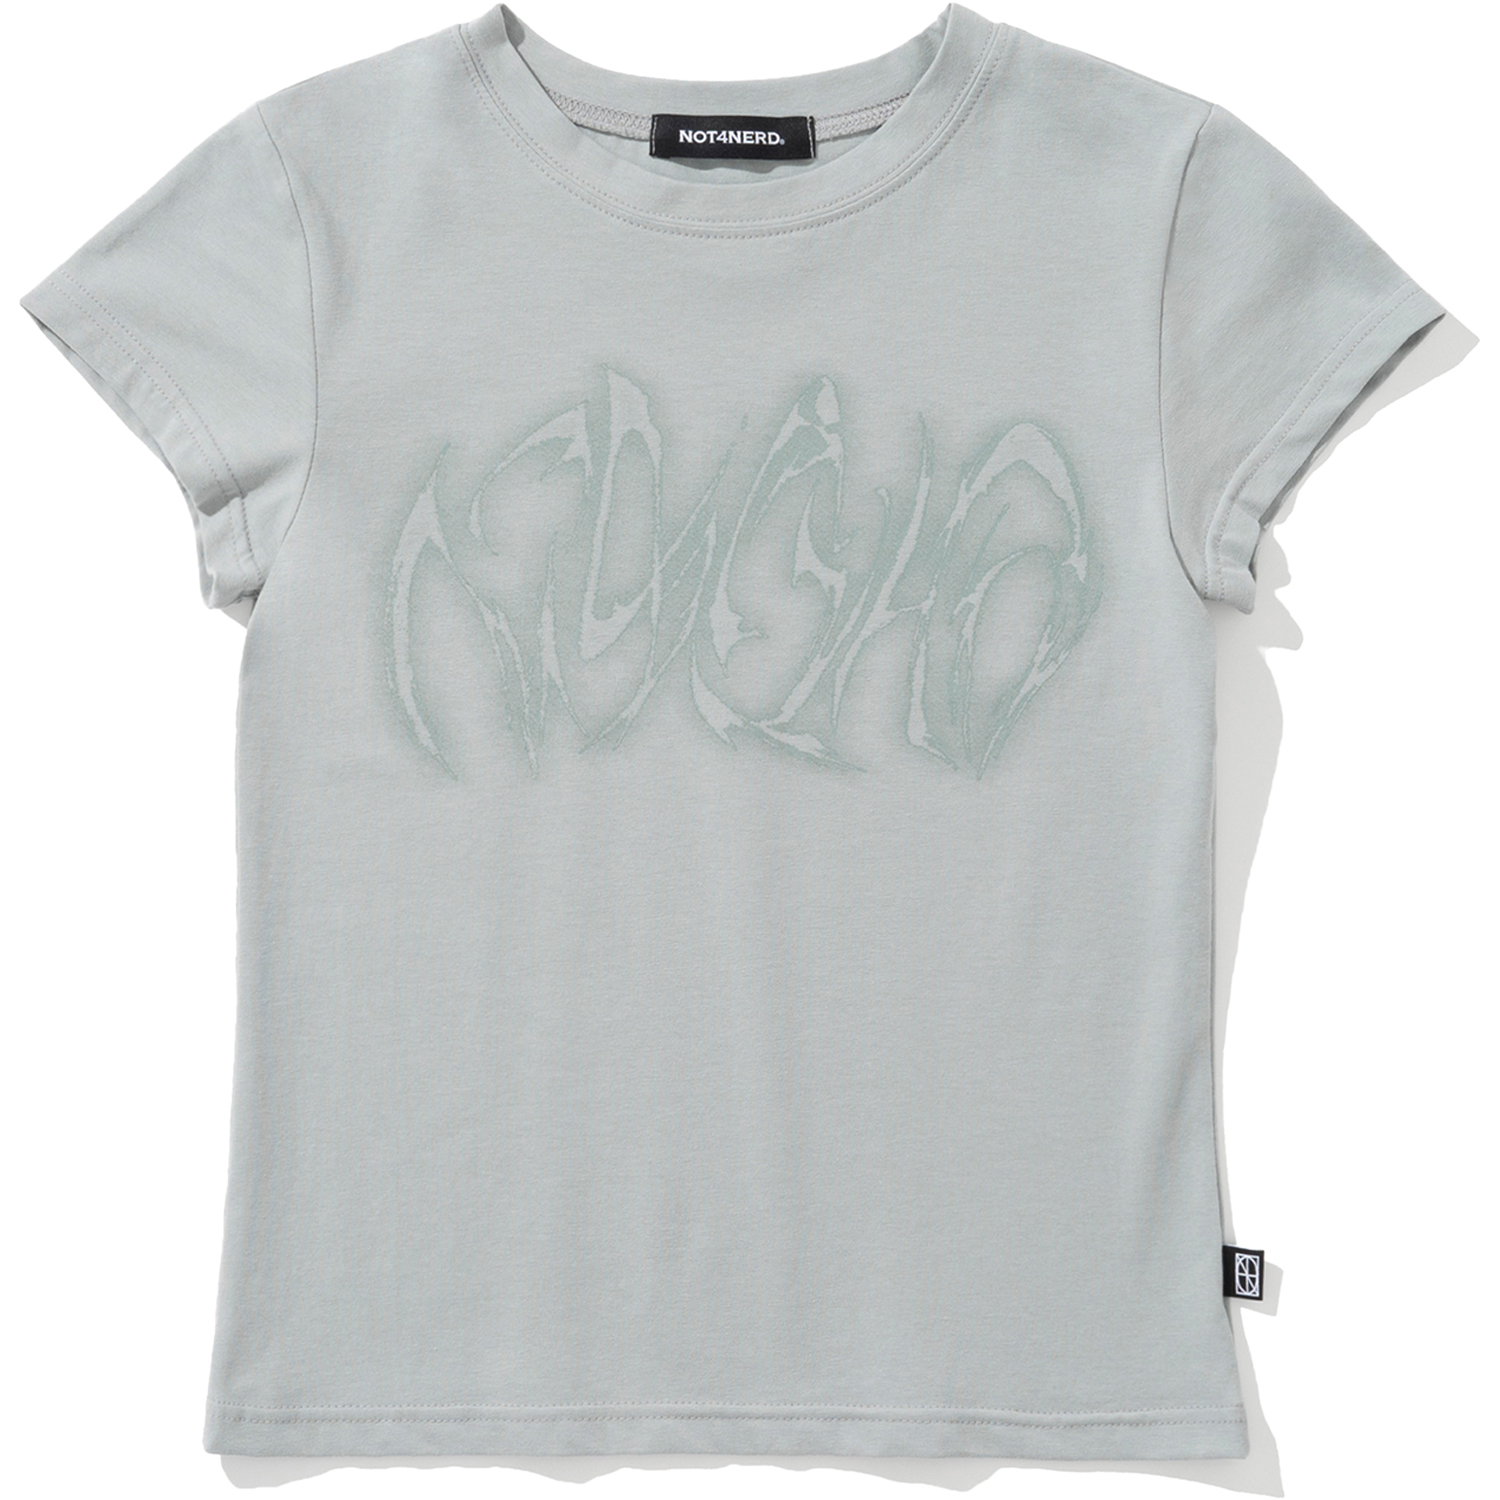 [5월 13일 예약배송] W Blur Boomerang Logo T-Shirts - Mint,NOT4NERD